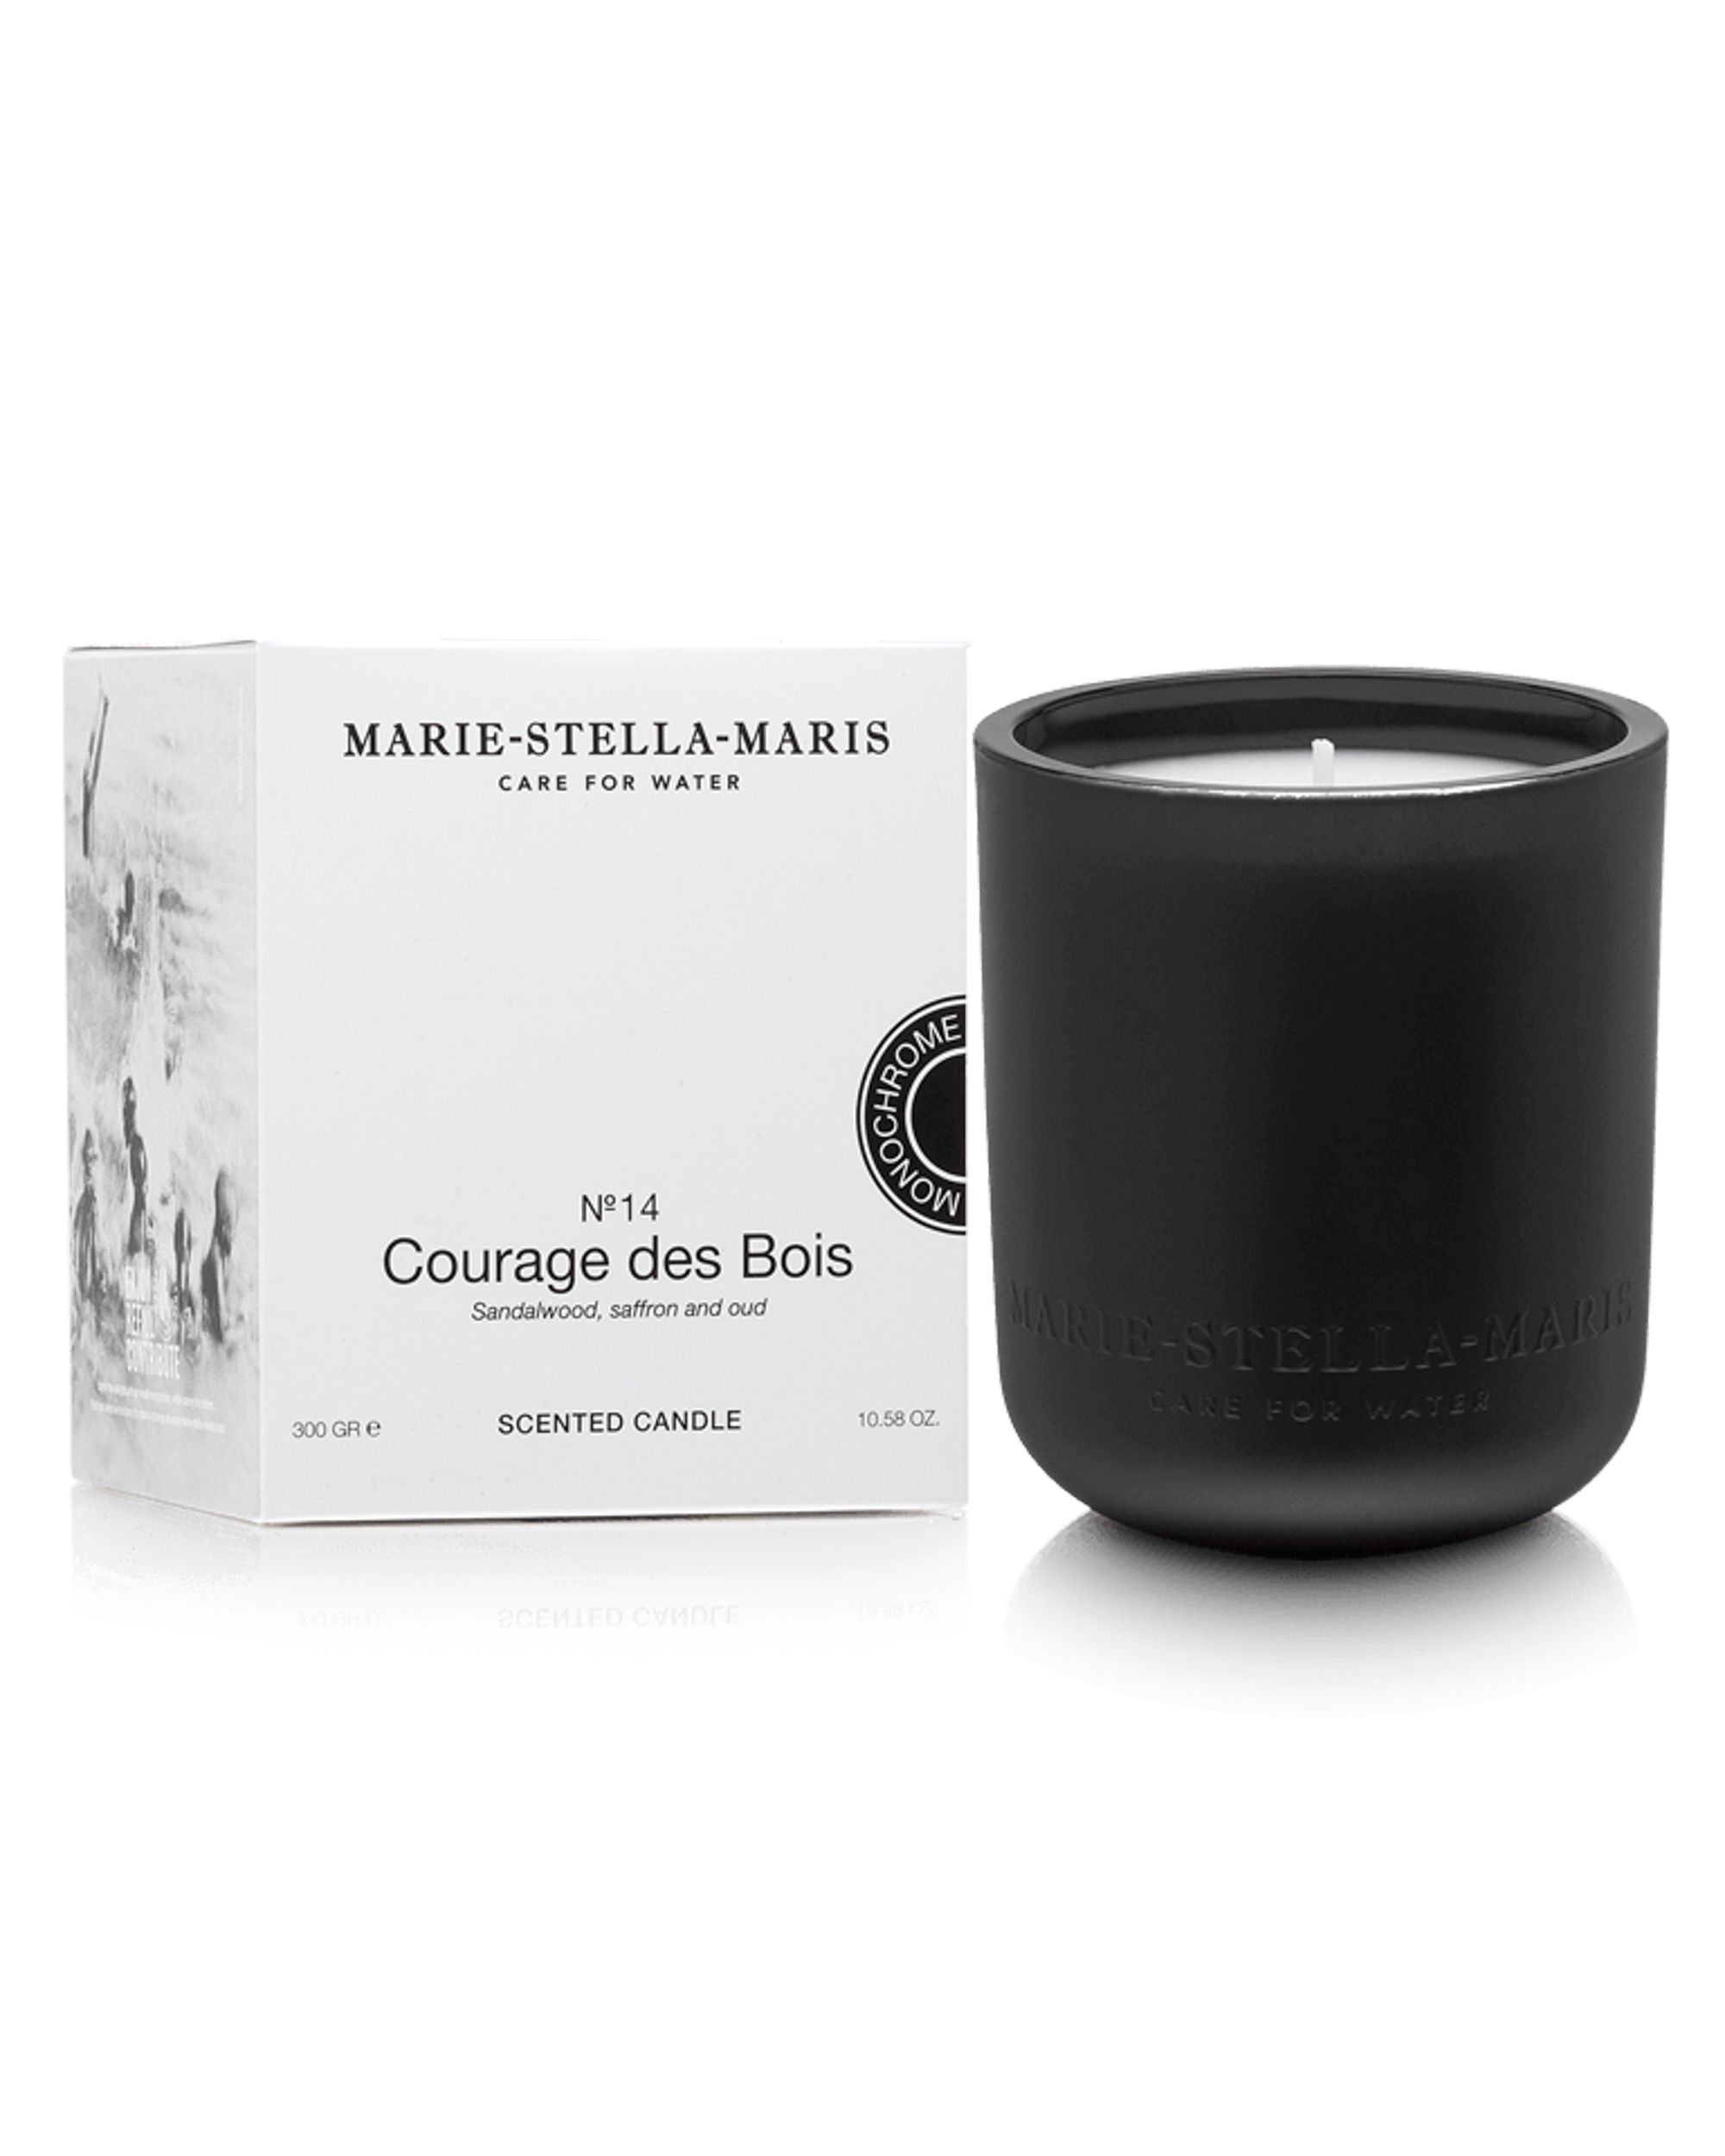 Marie-Stella-Maris Candle Courage des Bois 300 gr NVT 092134-001-220 GR